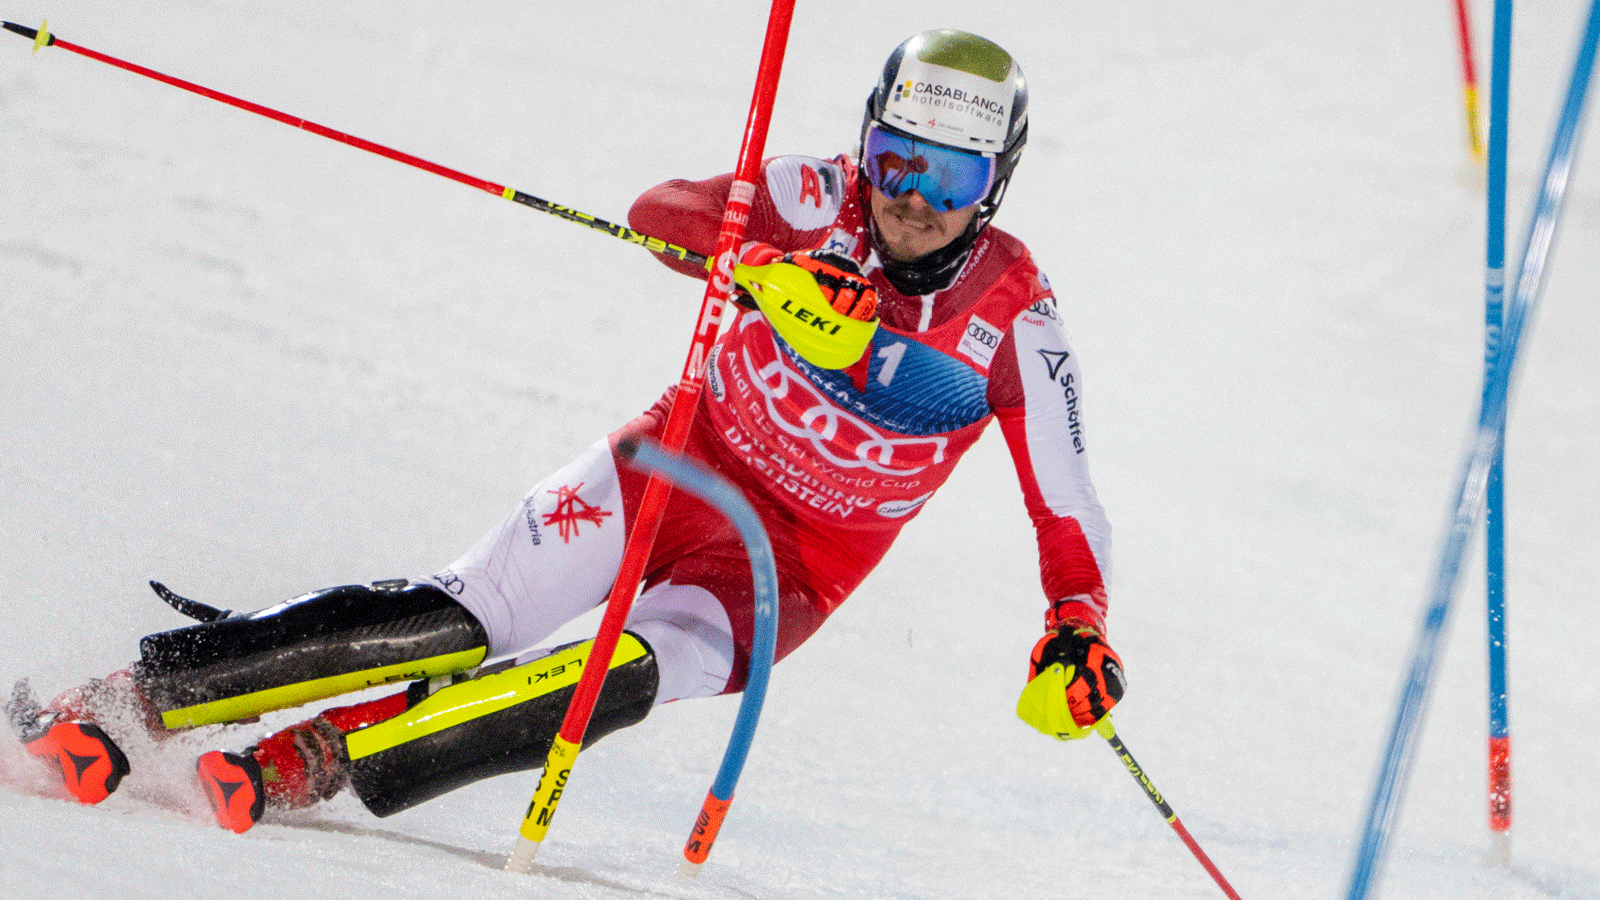 Ski Alpin, Manuel Feller